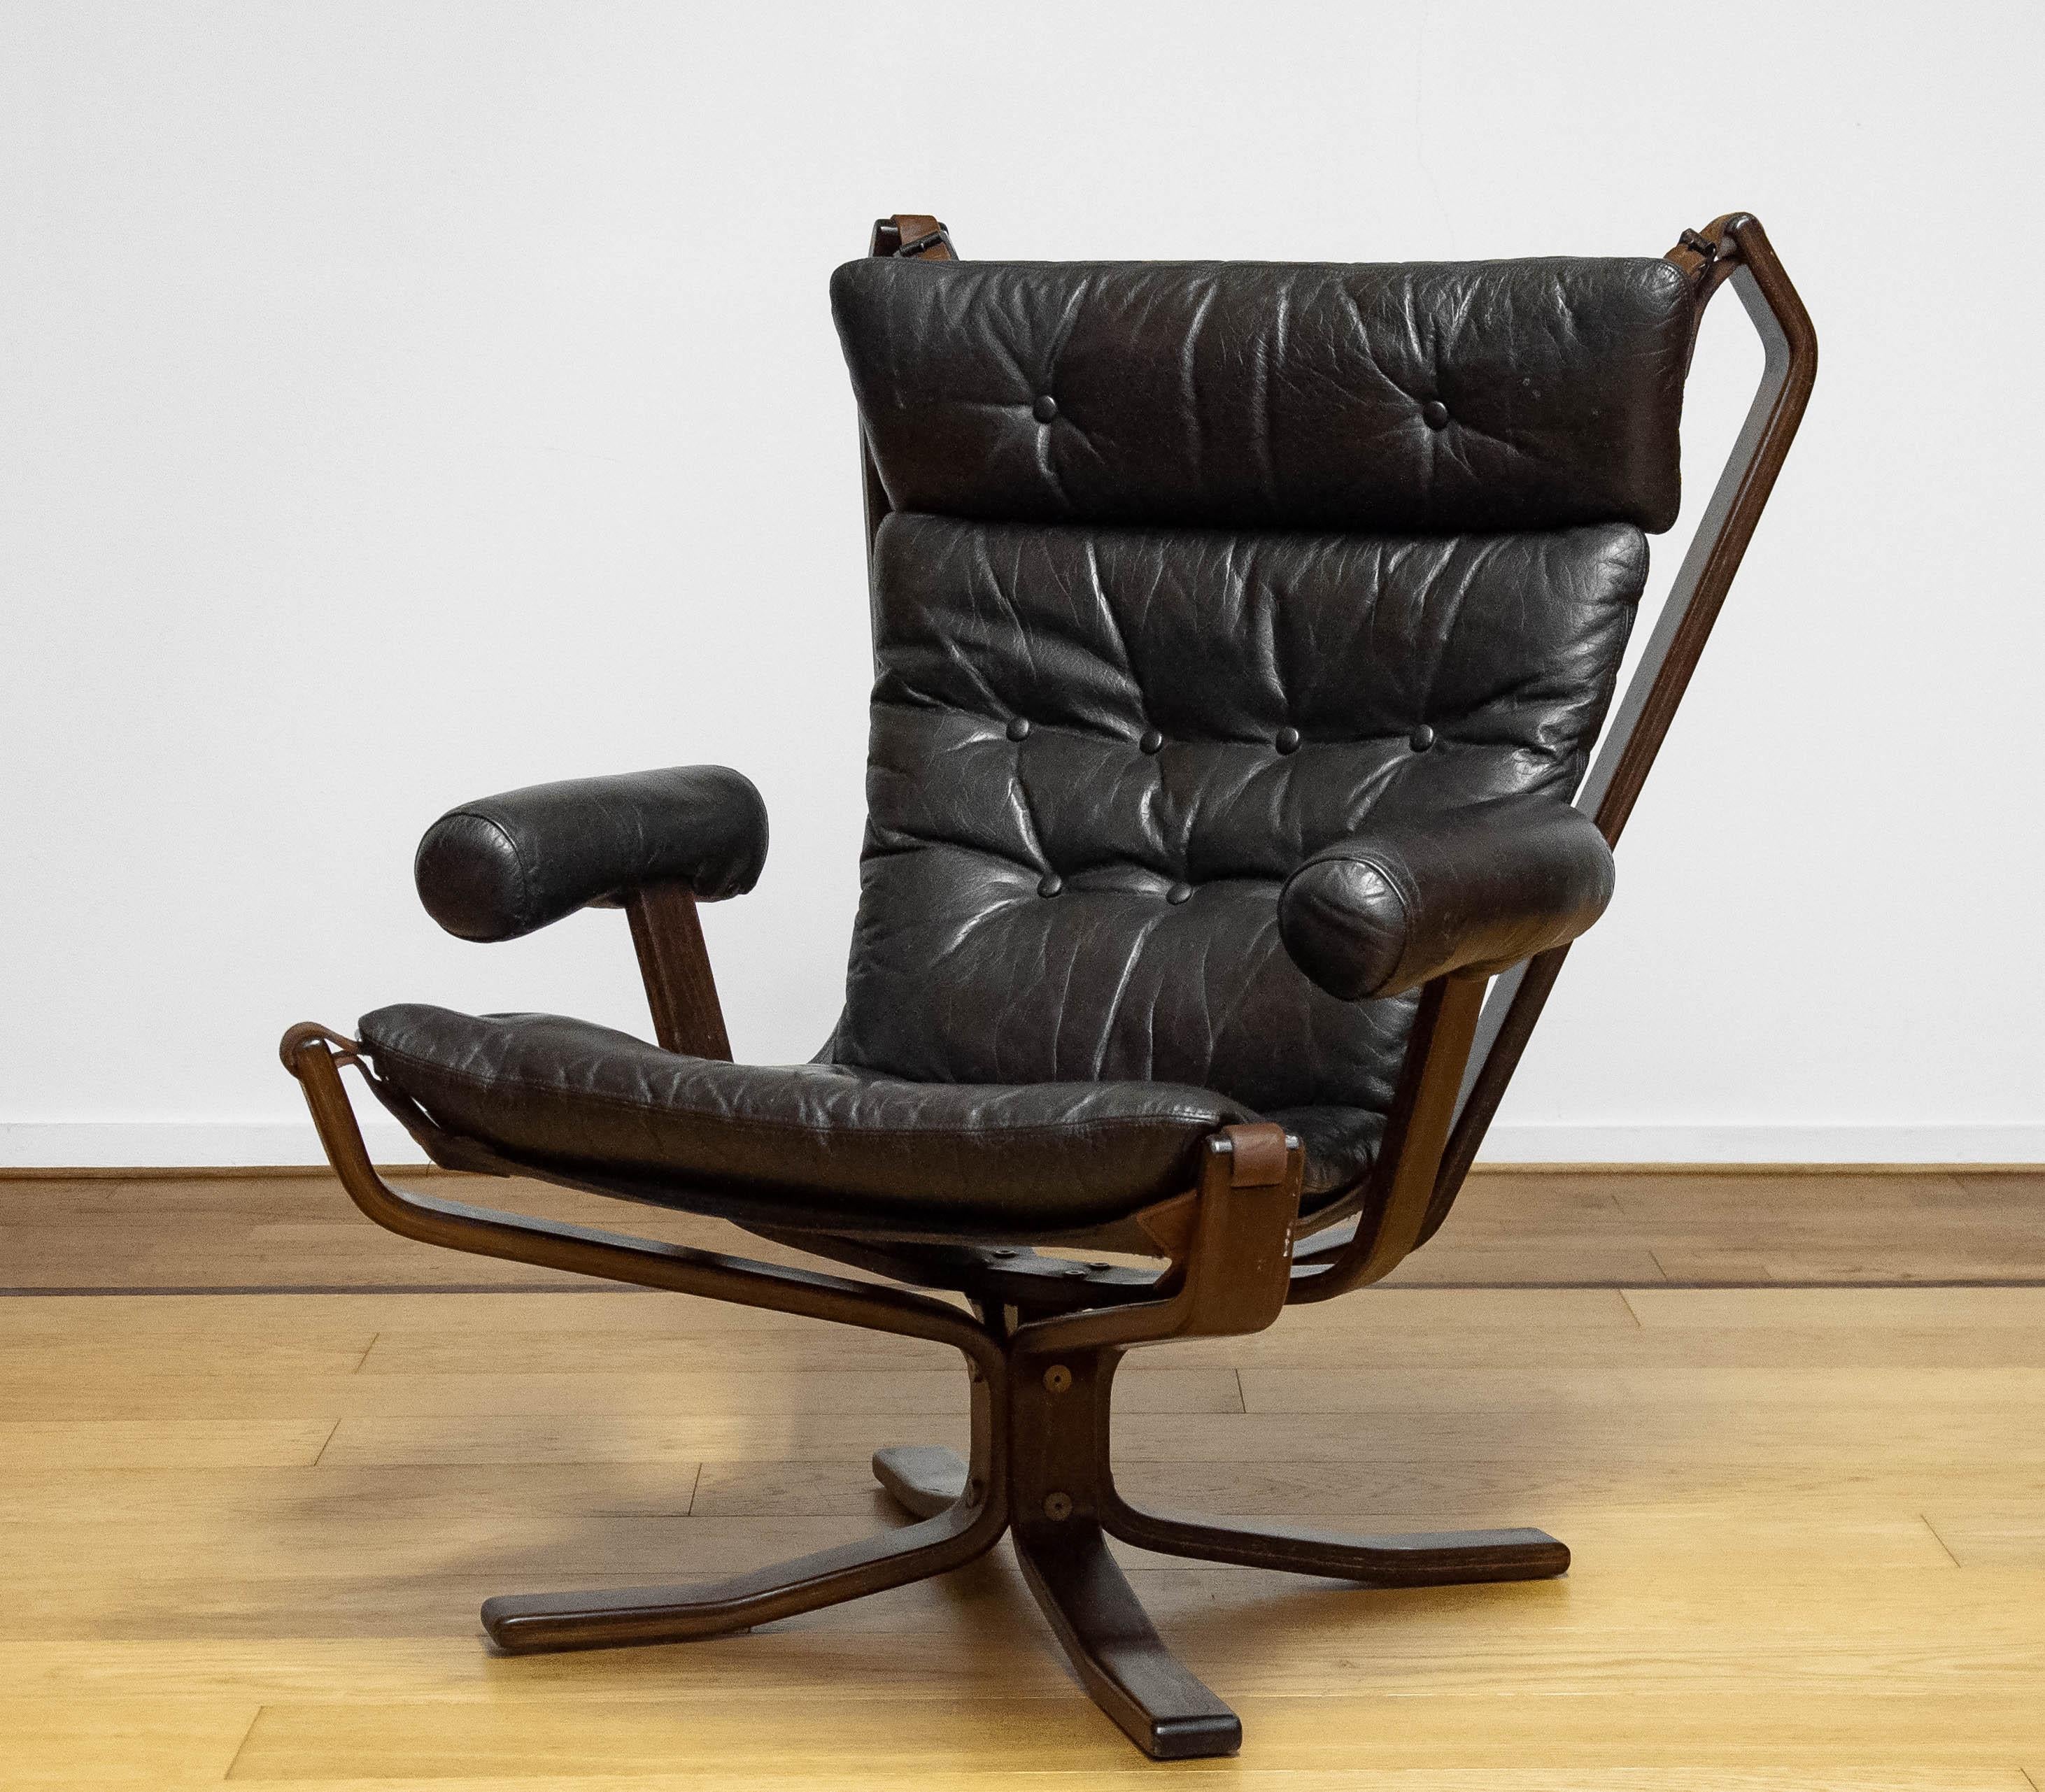 Schöner, seltener Sessel Modell 'Superstar', entworfen von Sigurd Ressel und hergestellt von Trygg Mobler in Dänemark.
Diese Modelle wurden in limitierter Auflage hergestellt.
Auch bekannt unter dem Namen 